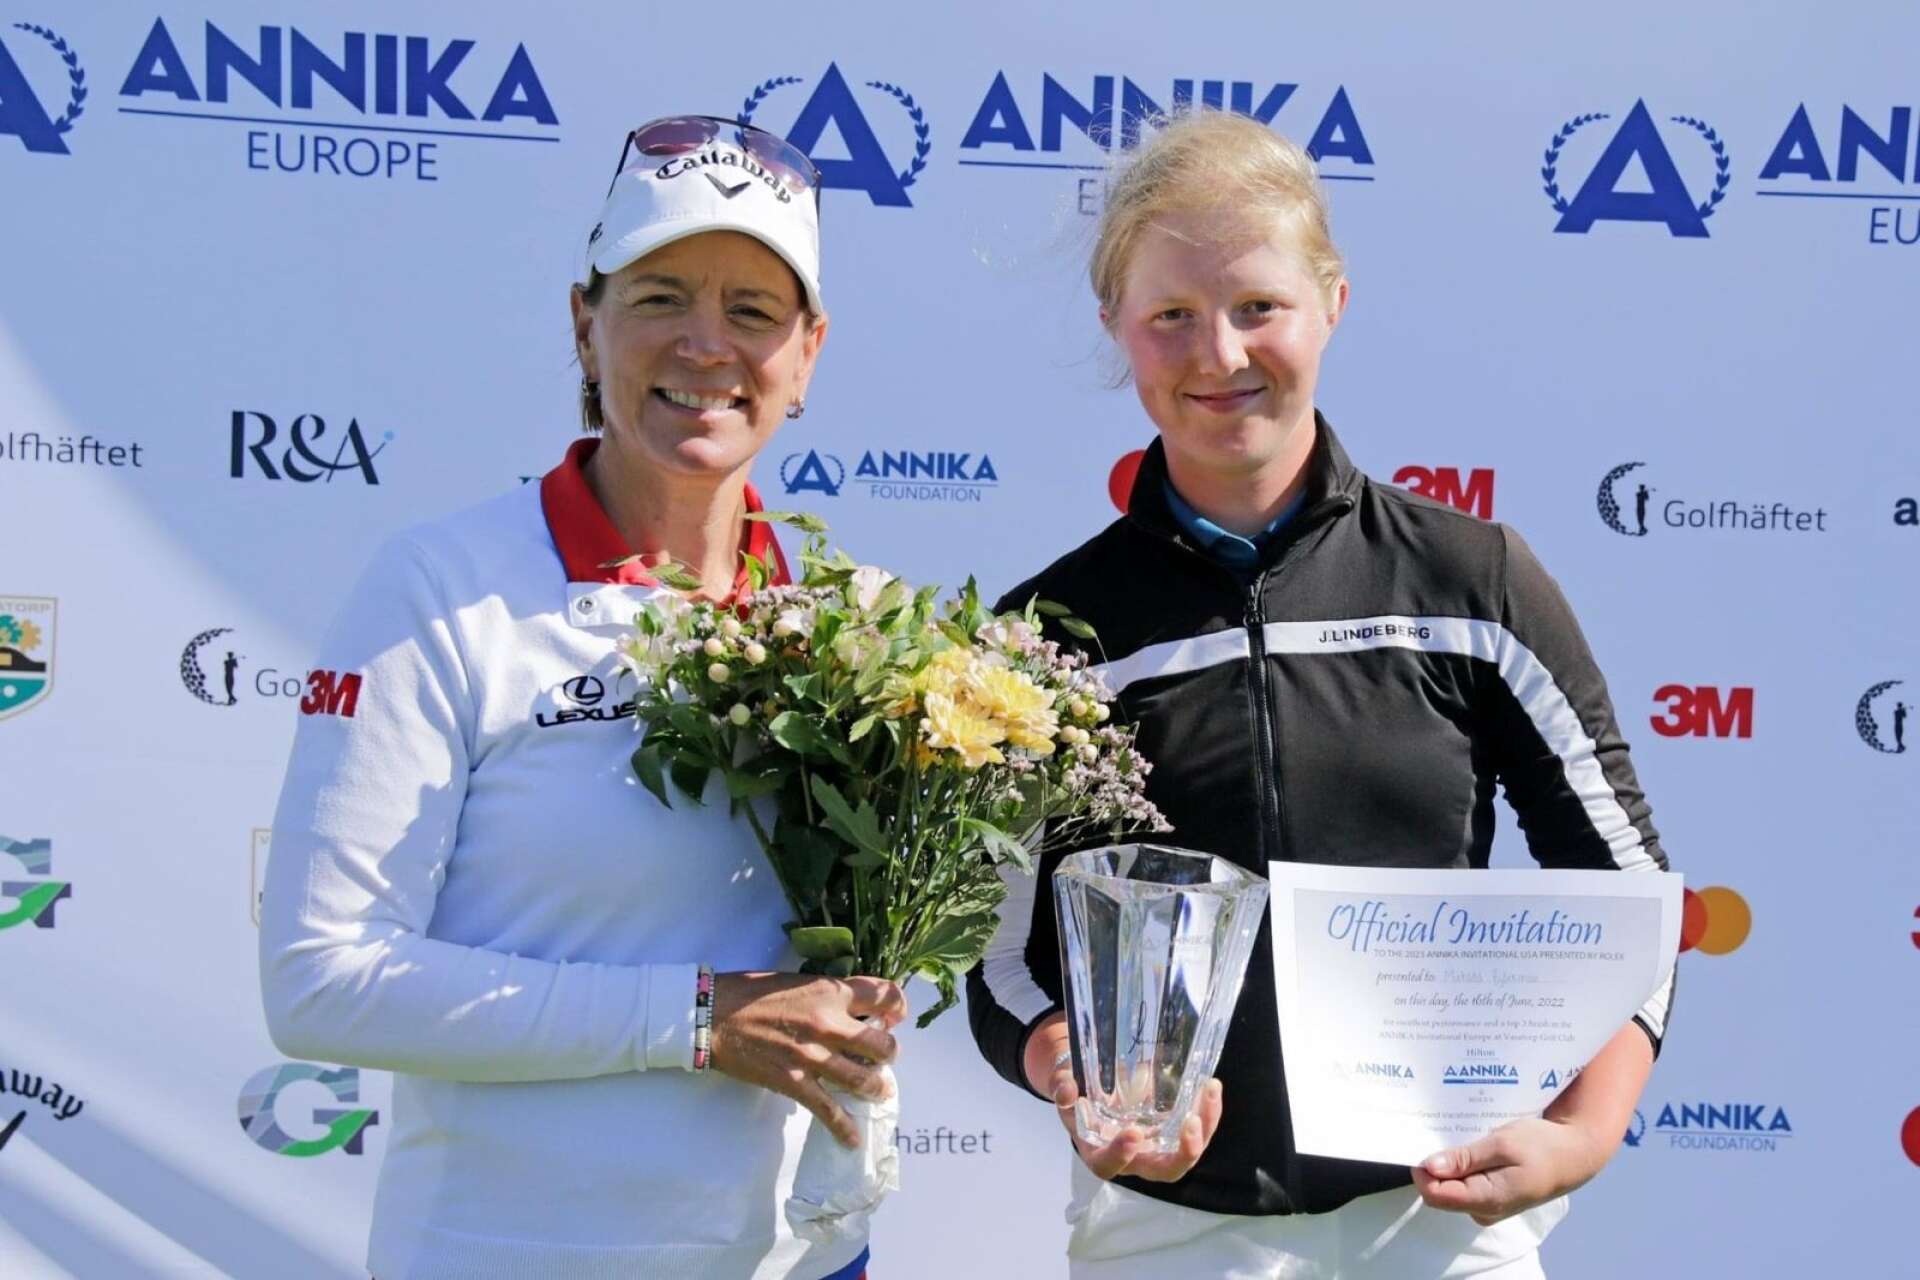 Törebodatjejen Matilda Björkman fick en inbjudan till golflegendaren Annika Sörenstam tävling i Florida i januari 2023. Detta efter en tredjeplats på Vasatorps GK.